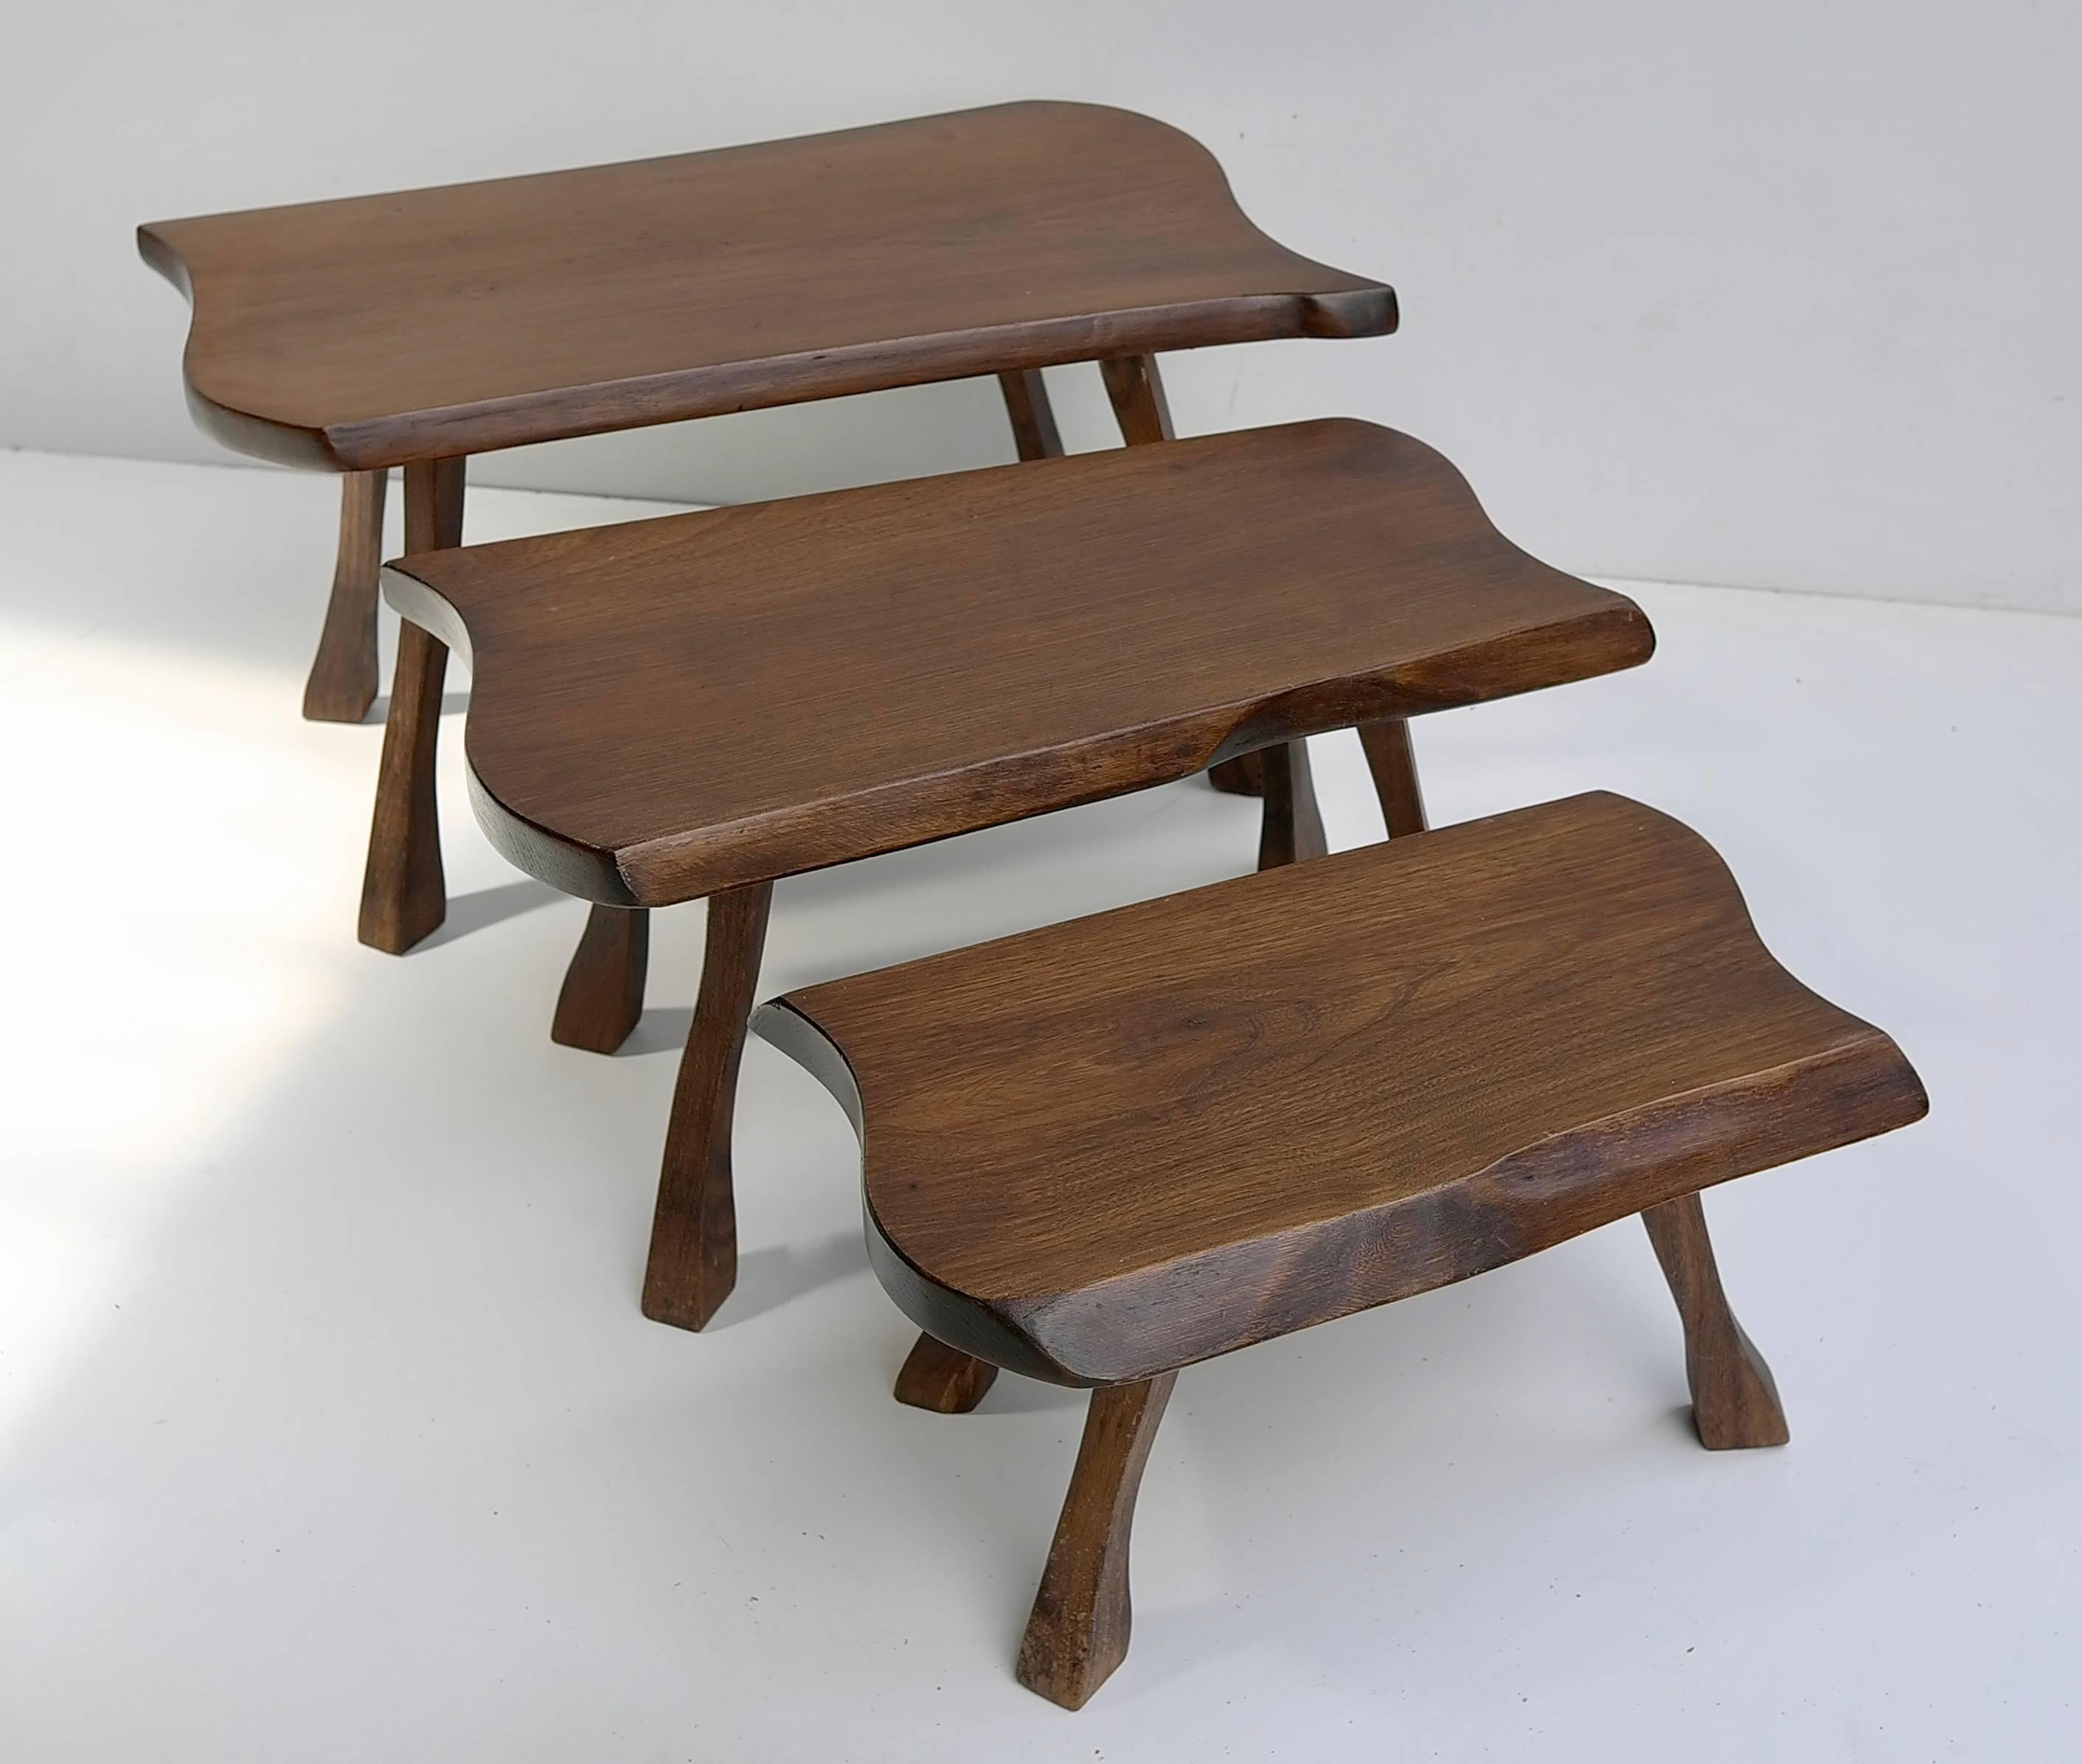 Tables d'appoint en bois bio

Mesure : La plus grande table : 60cm x 30cm, table du milieu : 50cm x 25cm, la plus petite 40cm x 20cm.